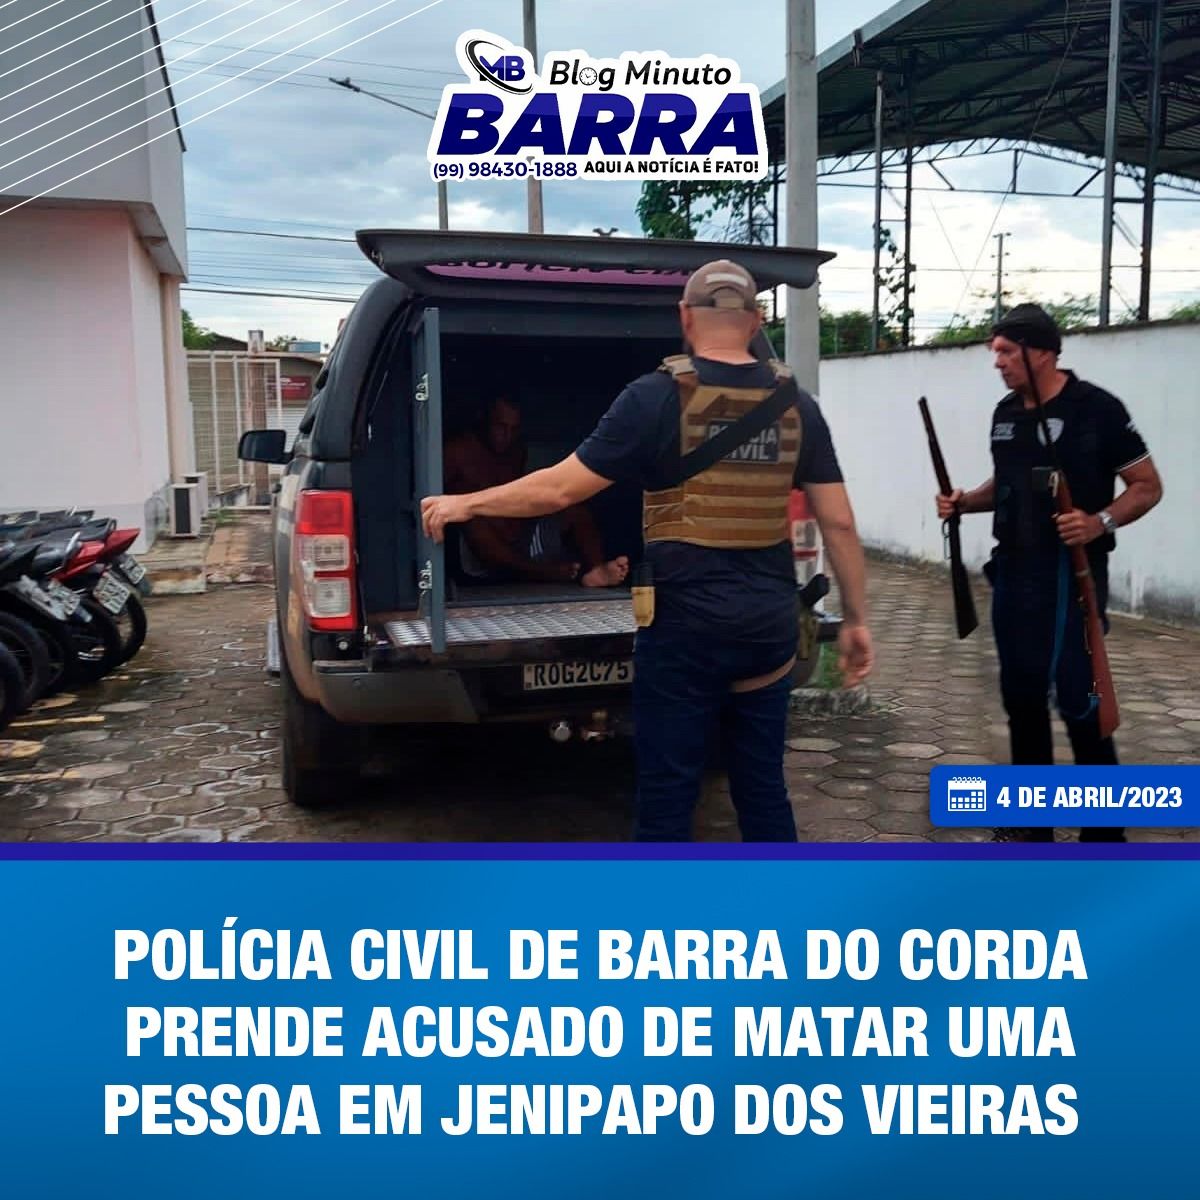 4 DE ABRIL: Polícia Civil de Barra do Corda prende JUMENTINHO, acusado de matar uma pessoa em Jenipapo dos Vieiras